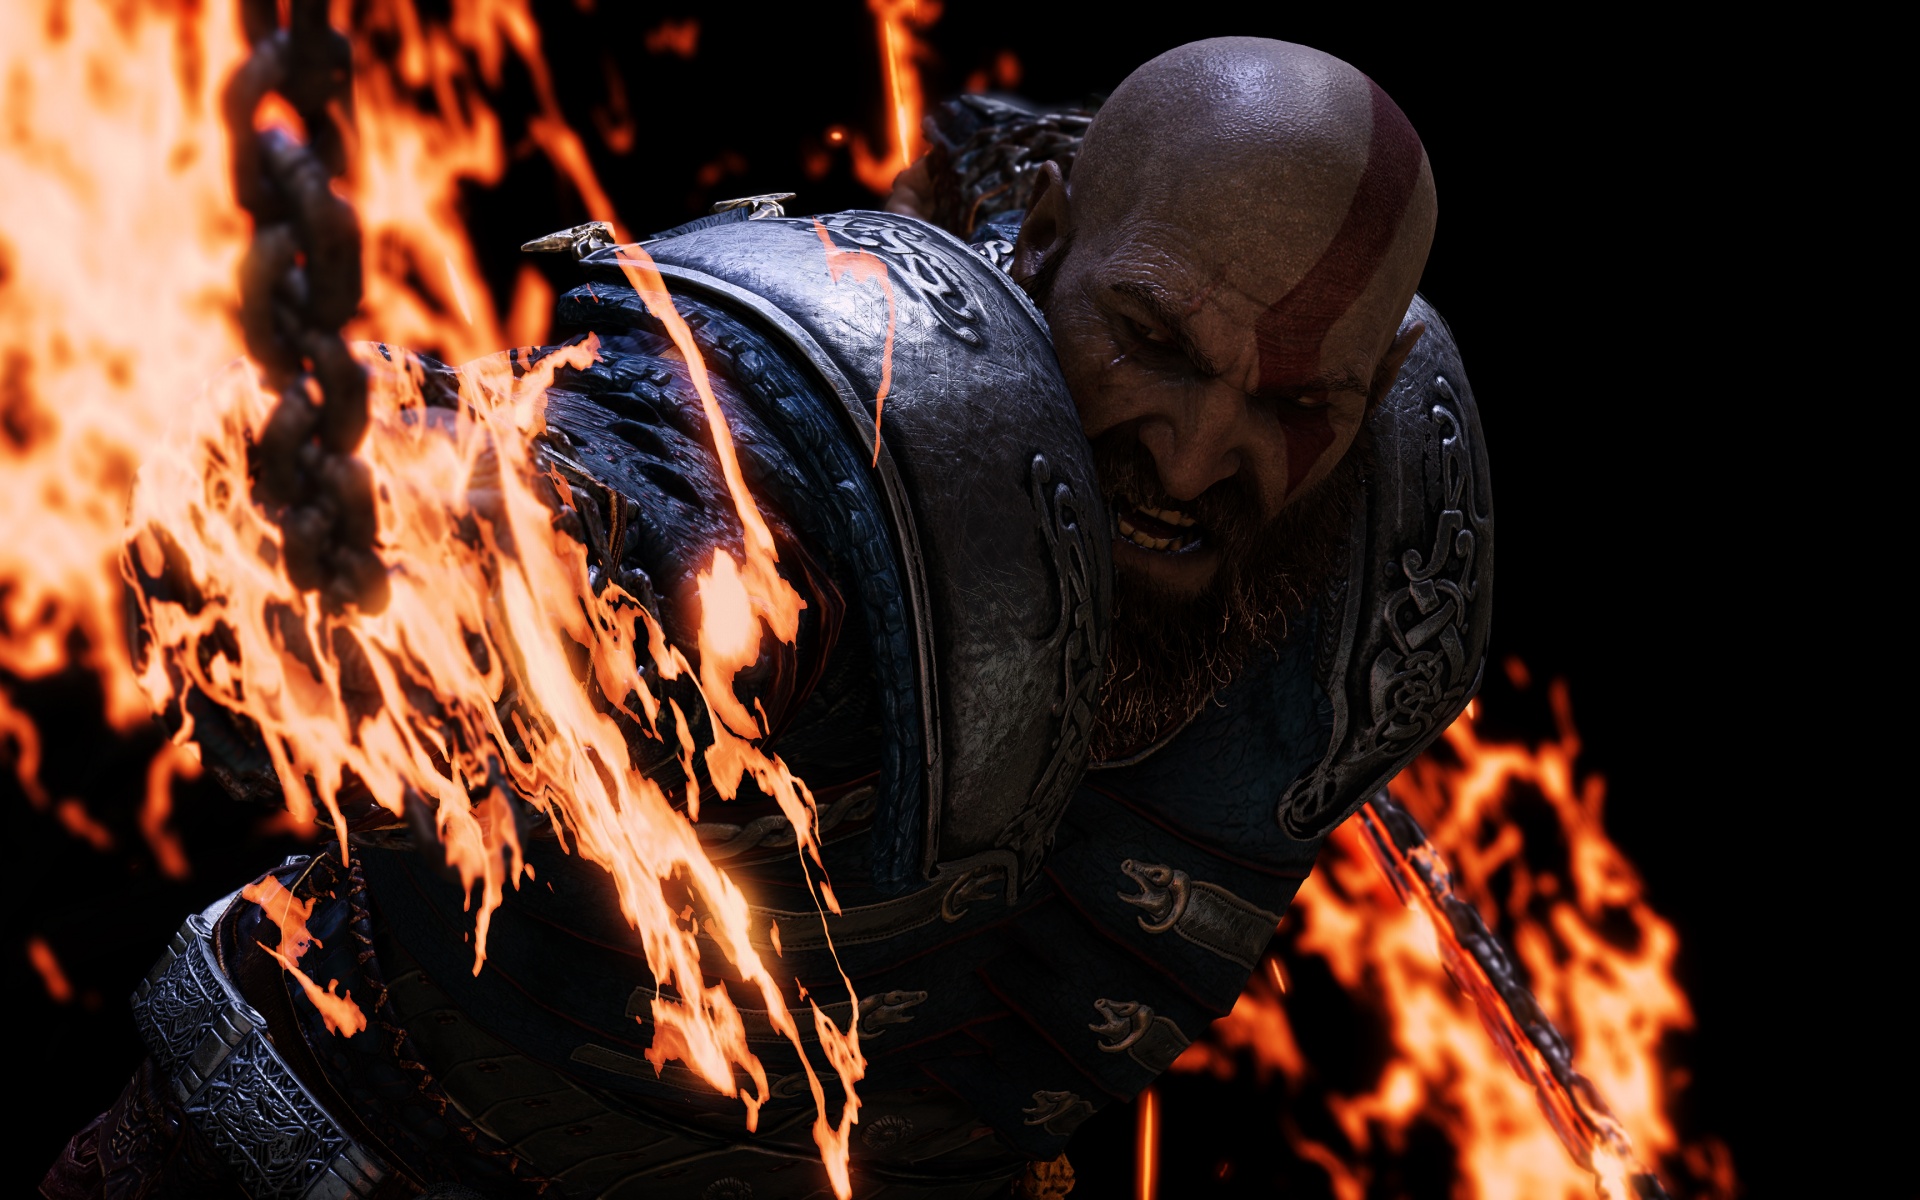 Hình nền Kratos 4K, God of War, Fire, Rage, Games, #8295: Với sự kết hợp của nhiều thành phần thú vị như Kratos, God of War, Fire, Rage và Games, hình nền Kratos 4K, God of War, Fire, Rage, Games, #8295 sẽ mang đến cho bạn những trải nghiệm tuyệt vời ngay trên màn hình điện thoại. Hãy cùng tận hưởng những khoảnh khắc thú vị với những bức ảnh đầy phong cách này ngay hôm nay!